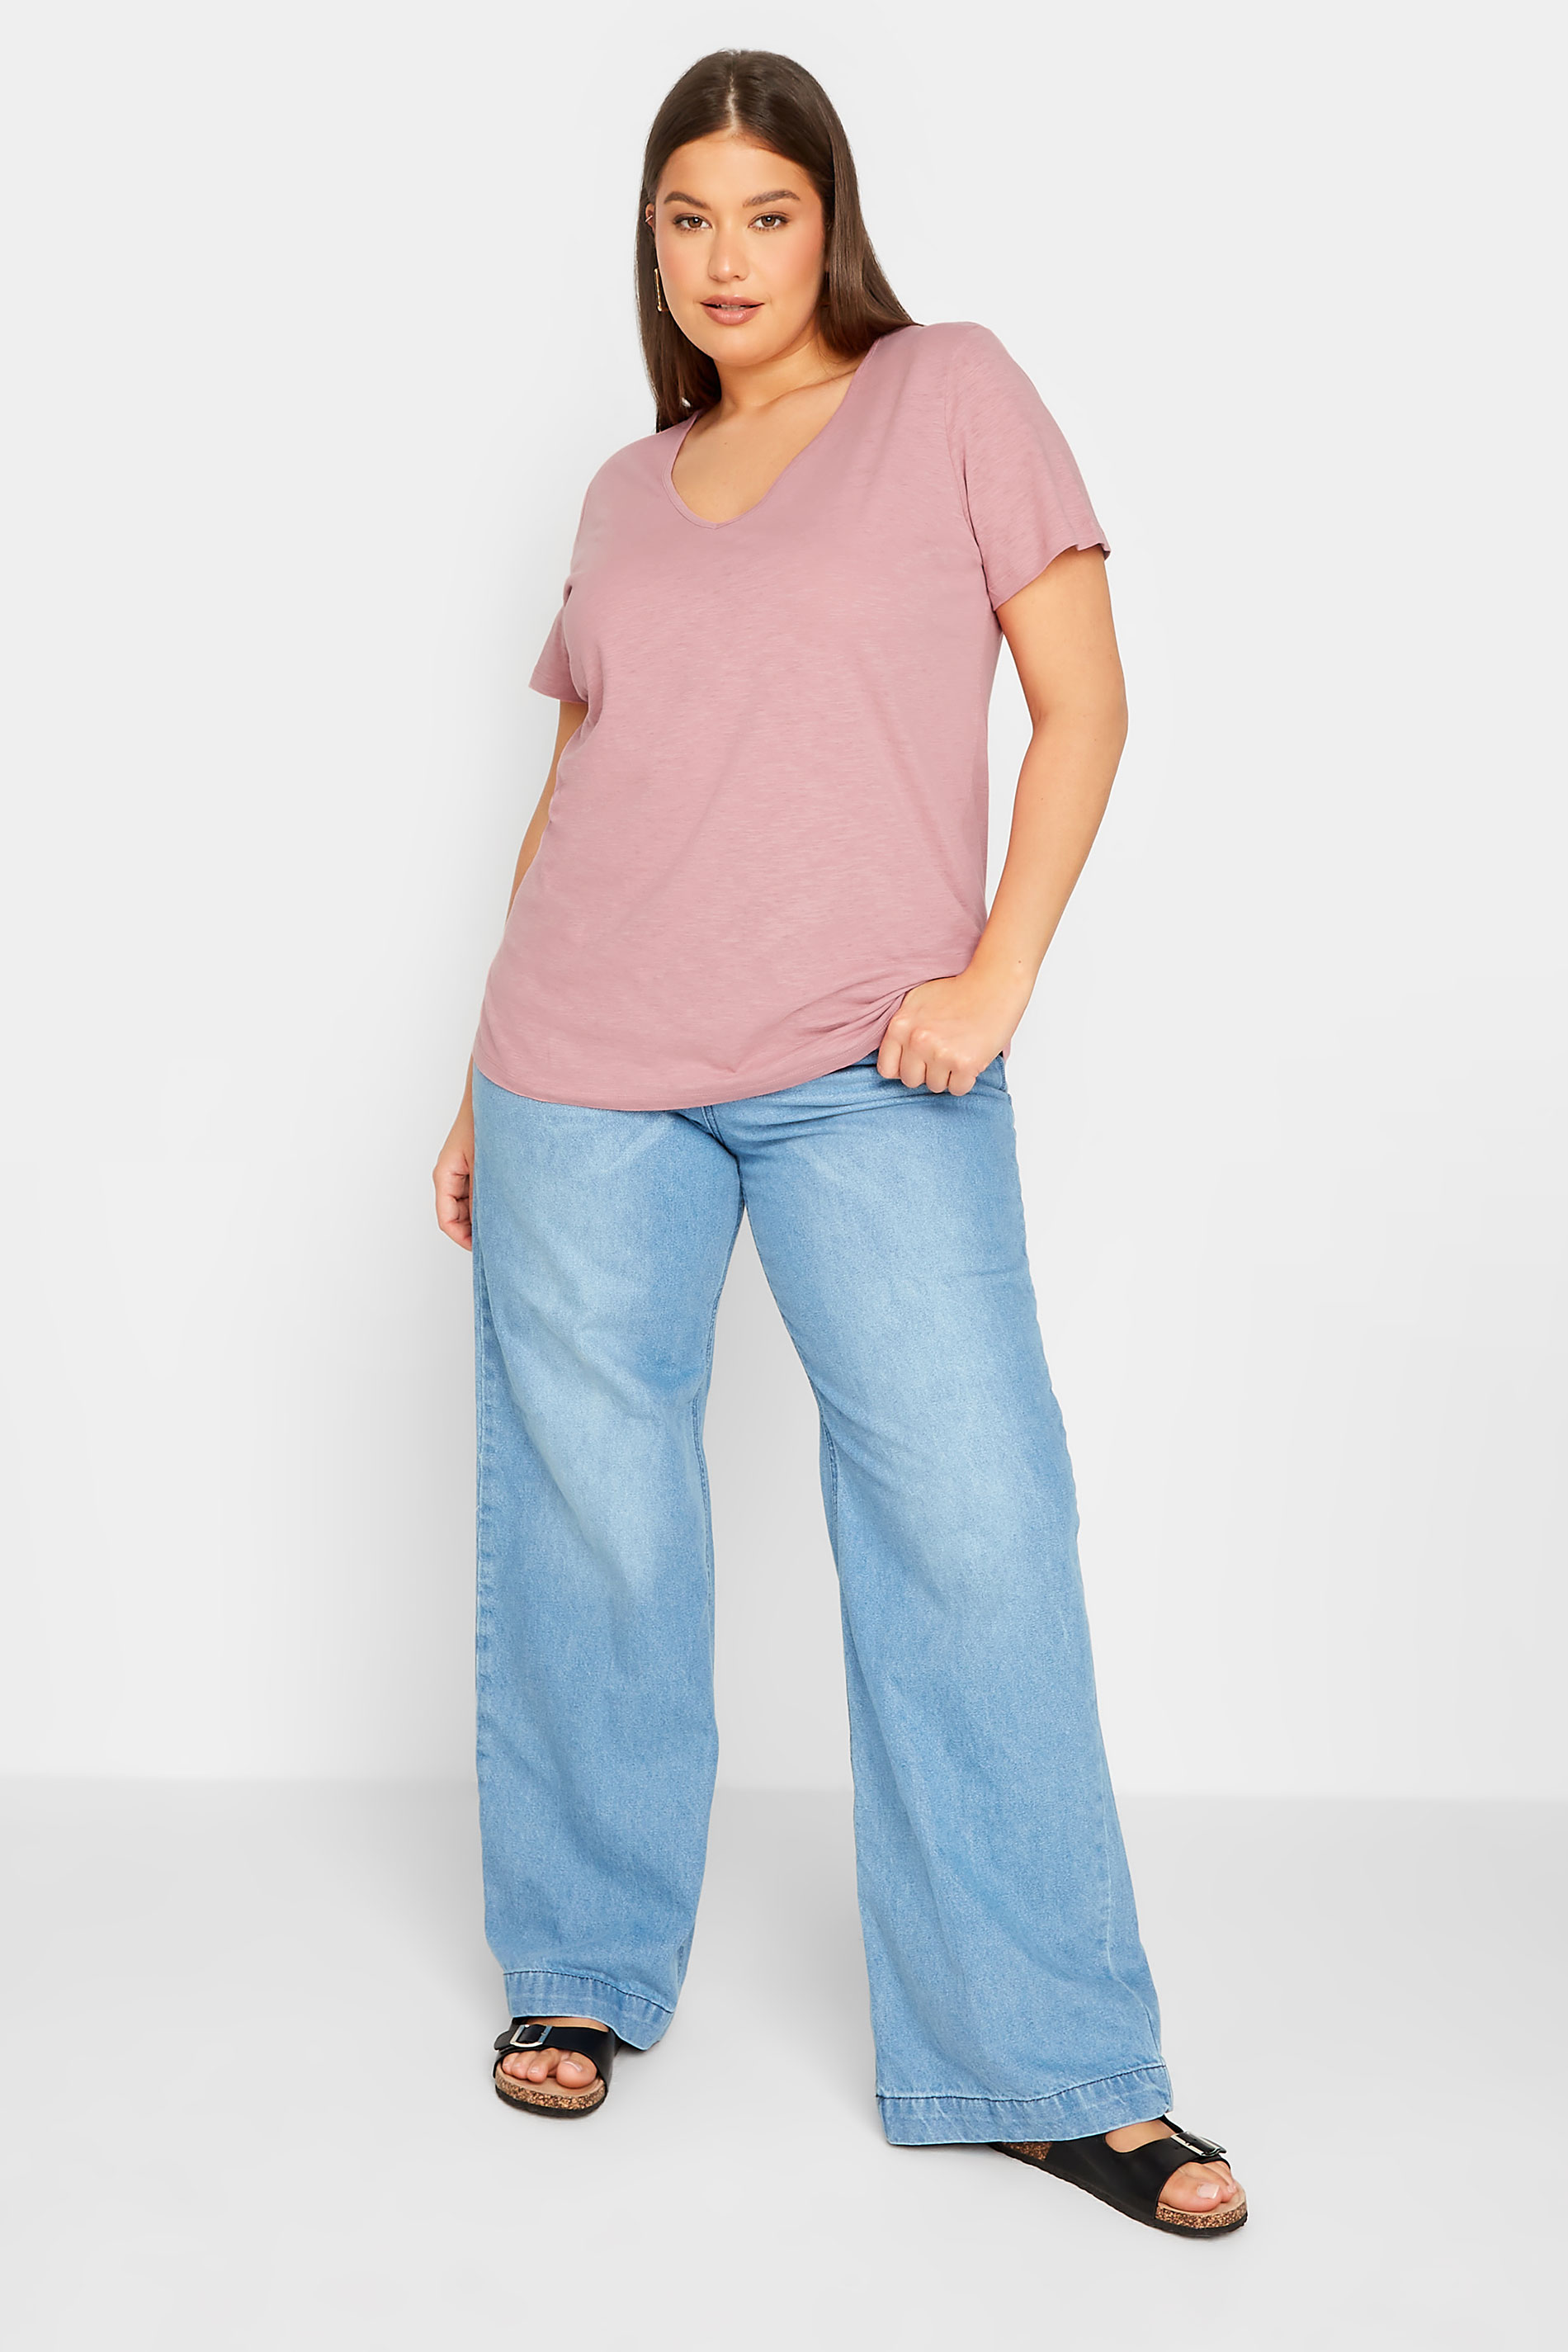 LTS Tall Women's Blush Pink Short Sleeve Cotton T-Shirt | Long Tall Sally 2